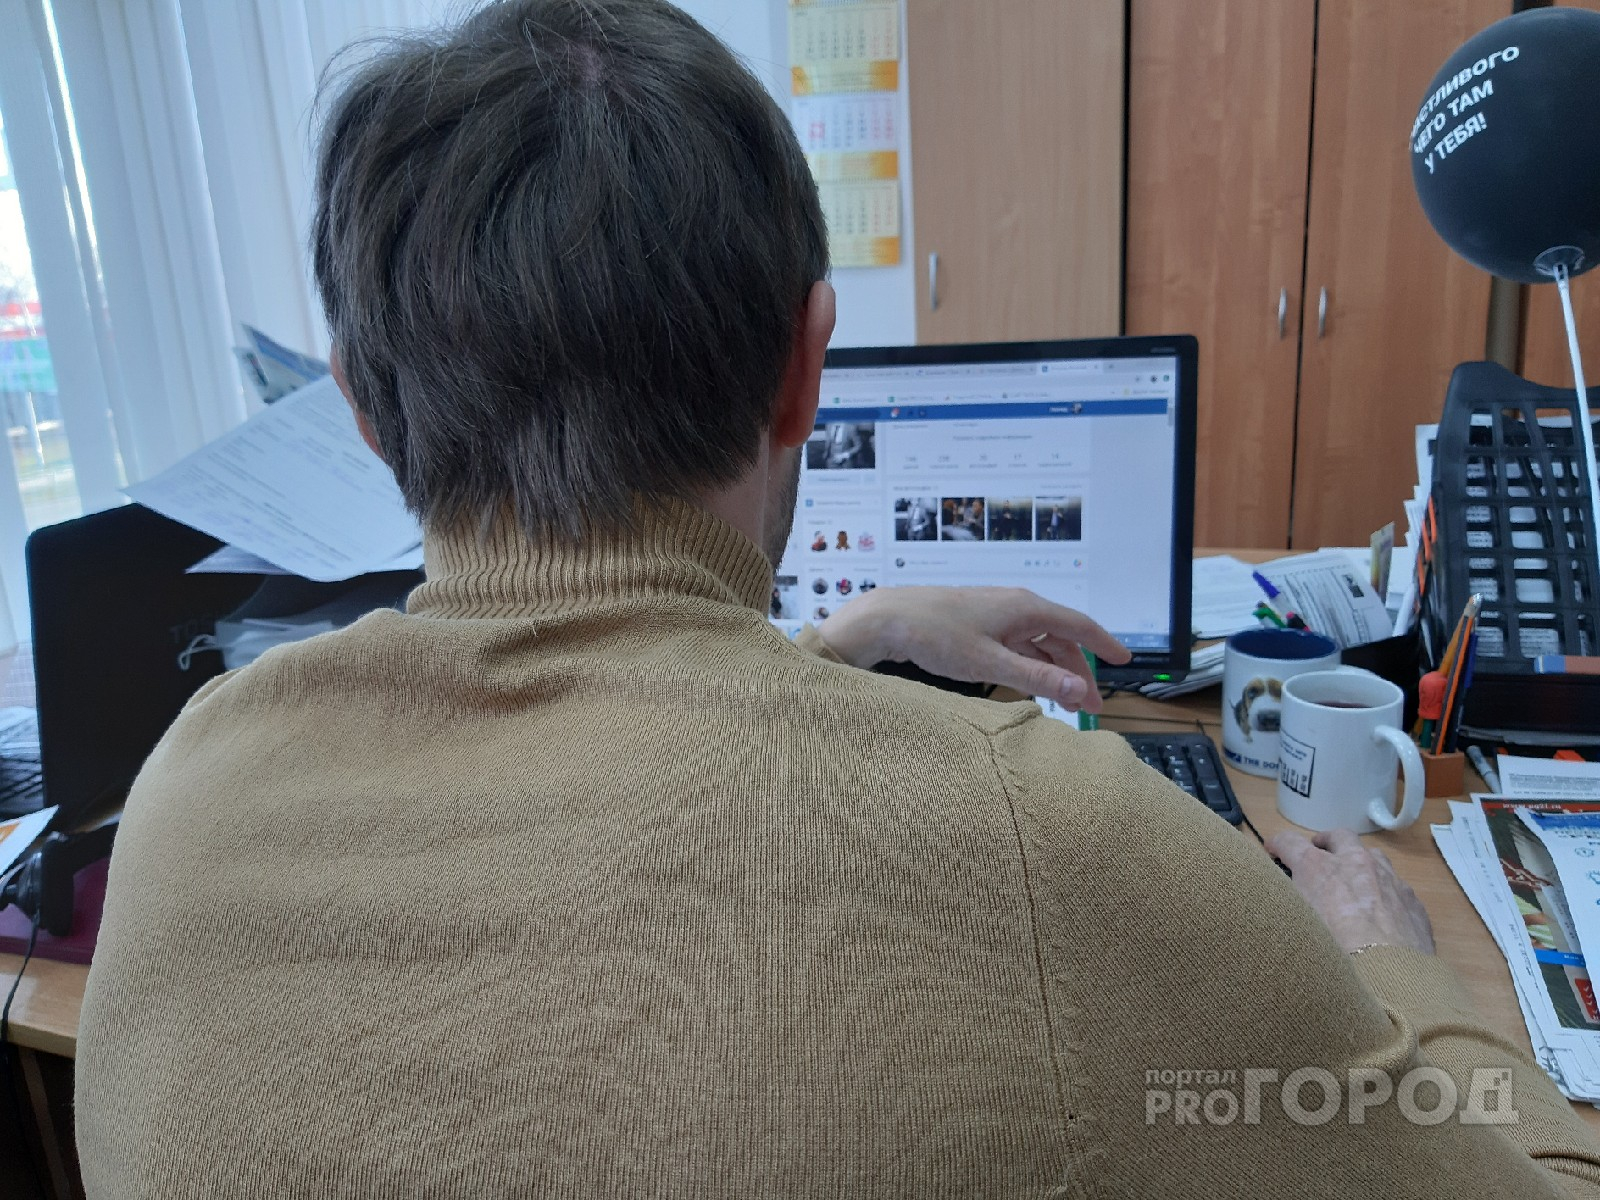 Мужчина жаловался во "ВКонтакте" на начальника и получил выговор